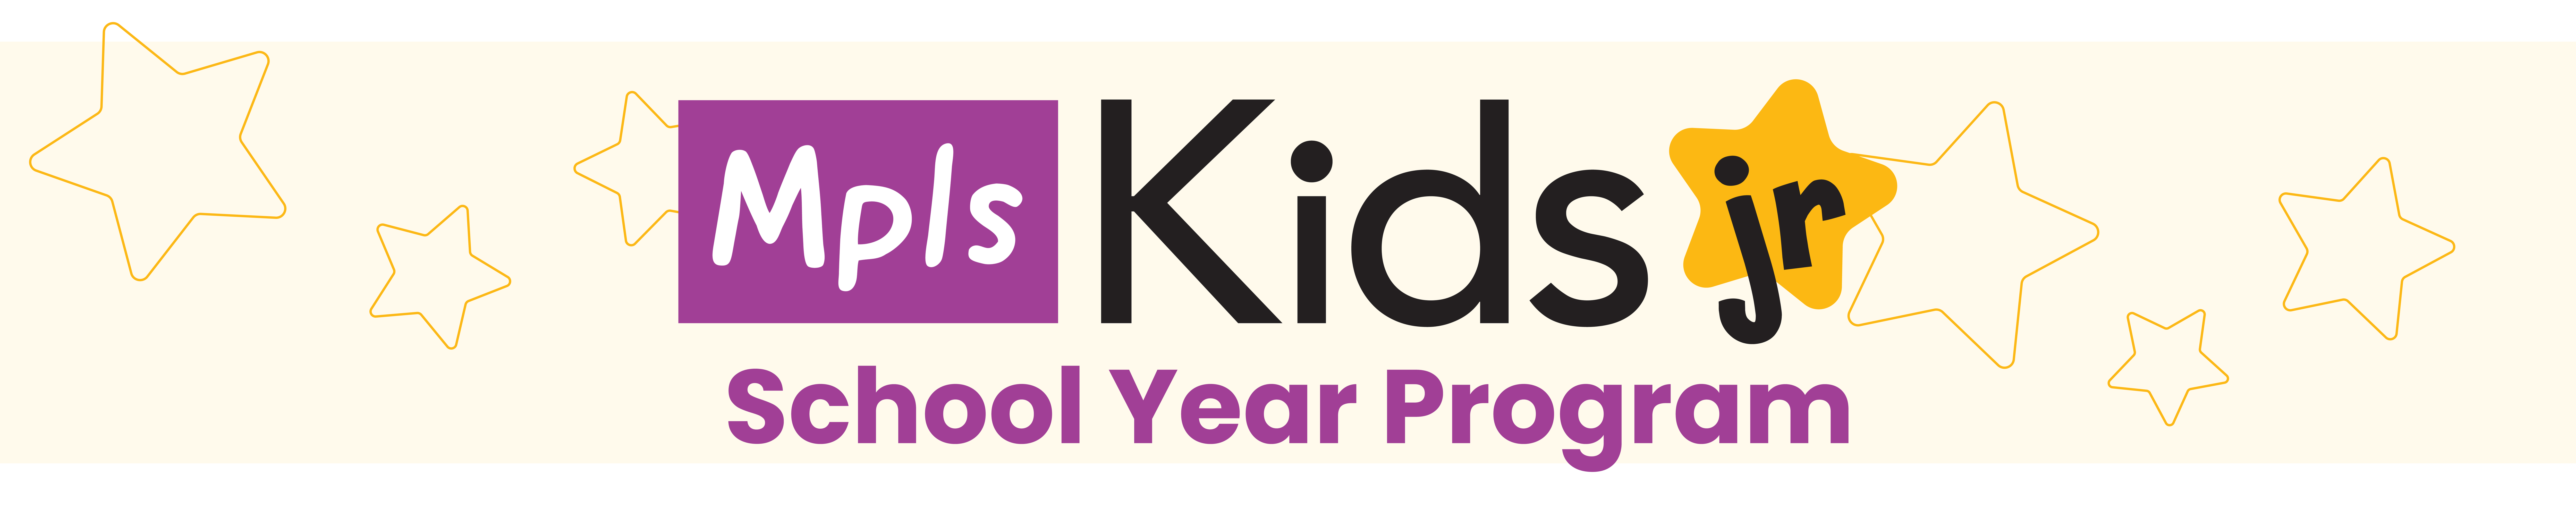 Minneapolis Kids Jr School Year Program